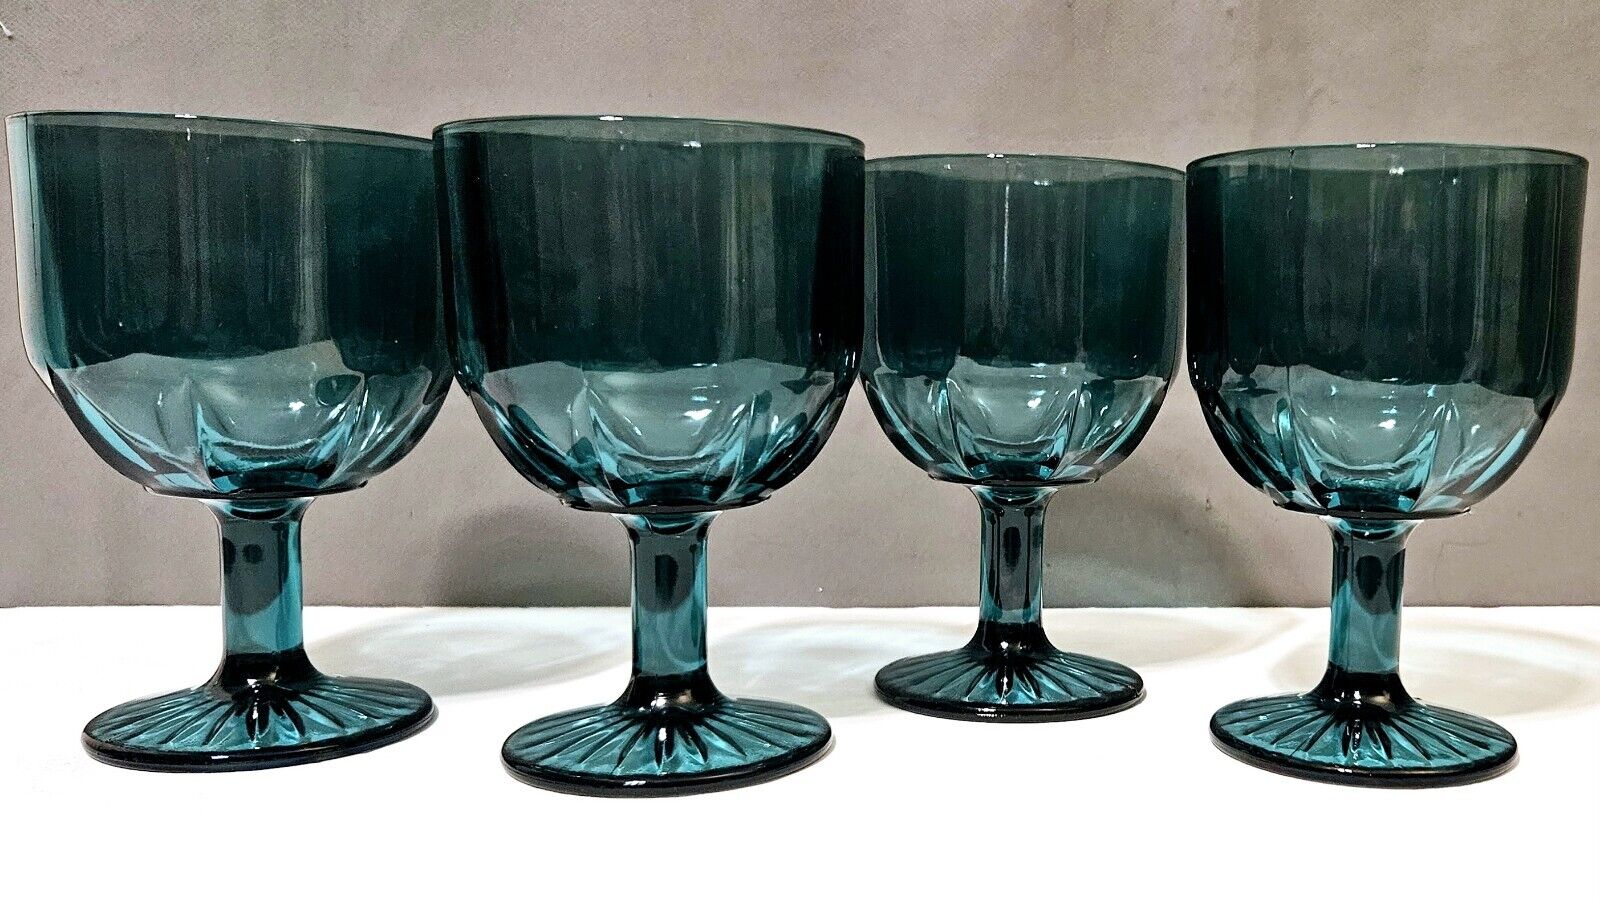 Vintage Aqua Blue Bartlett Collins Goblets Glasses Set of 4